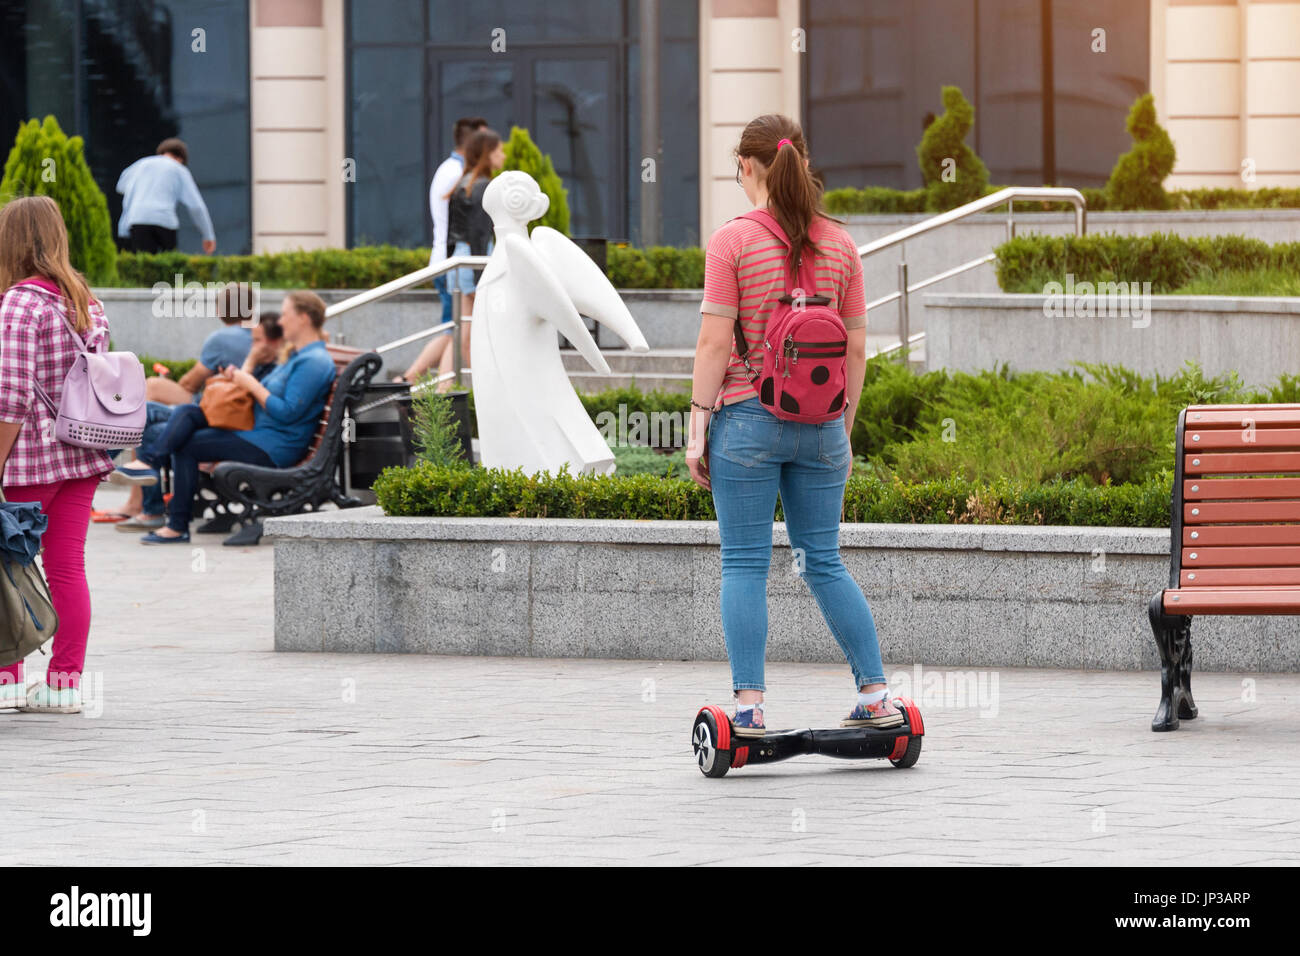 El skate eléctrico, una alternativa de mobilidad sostenible